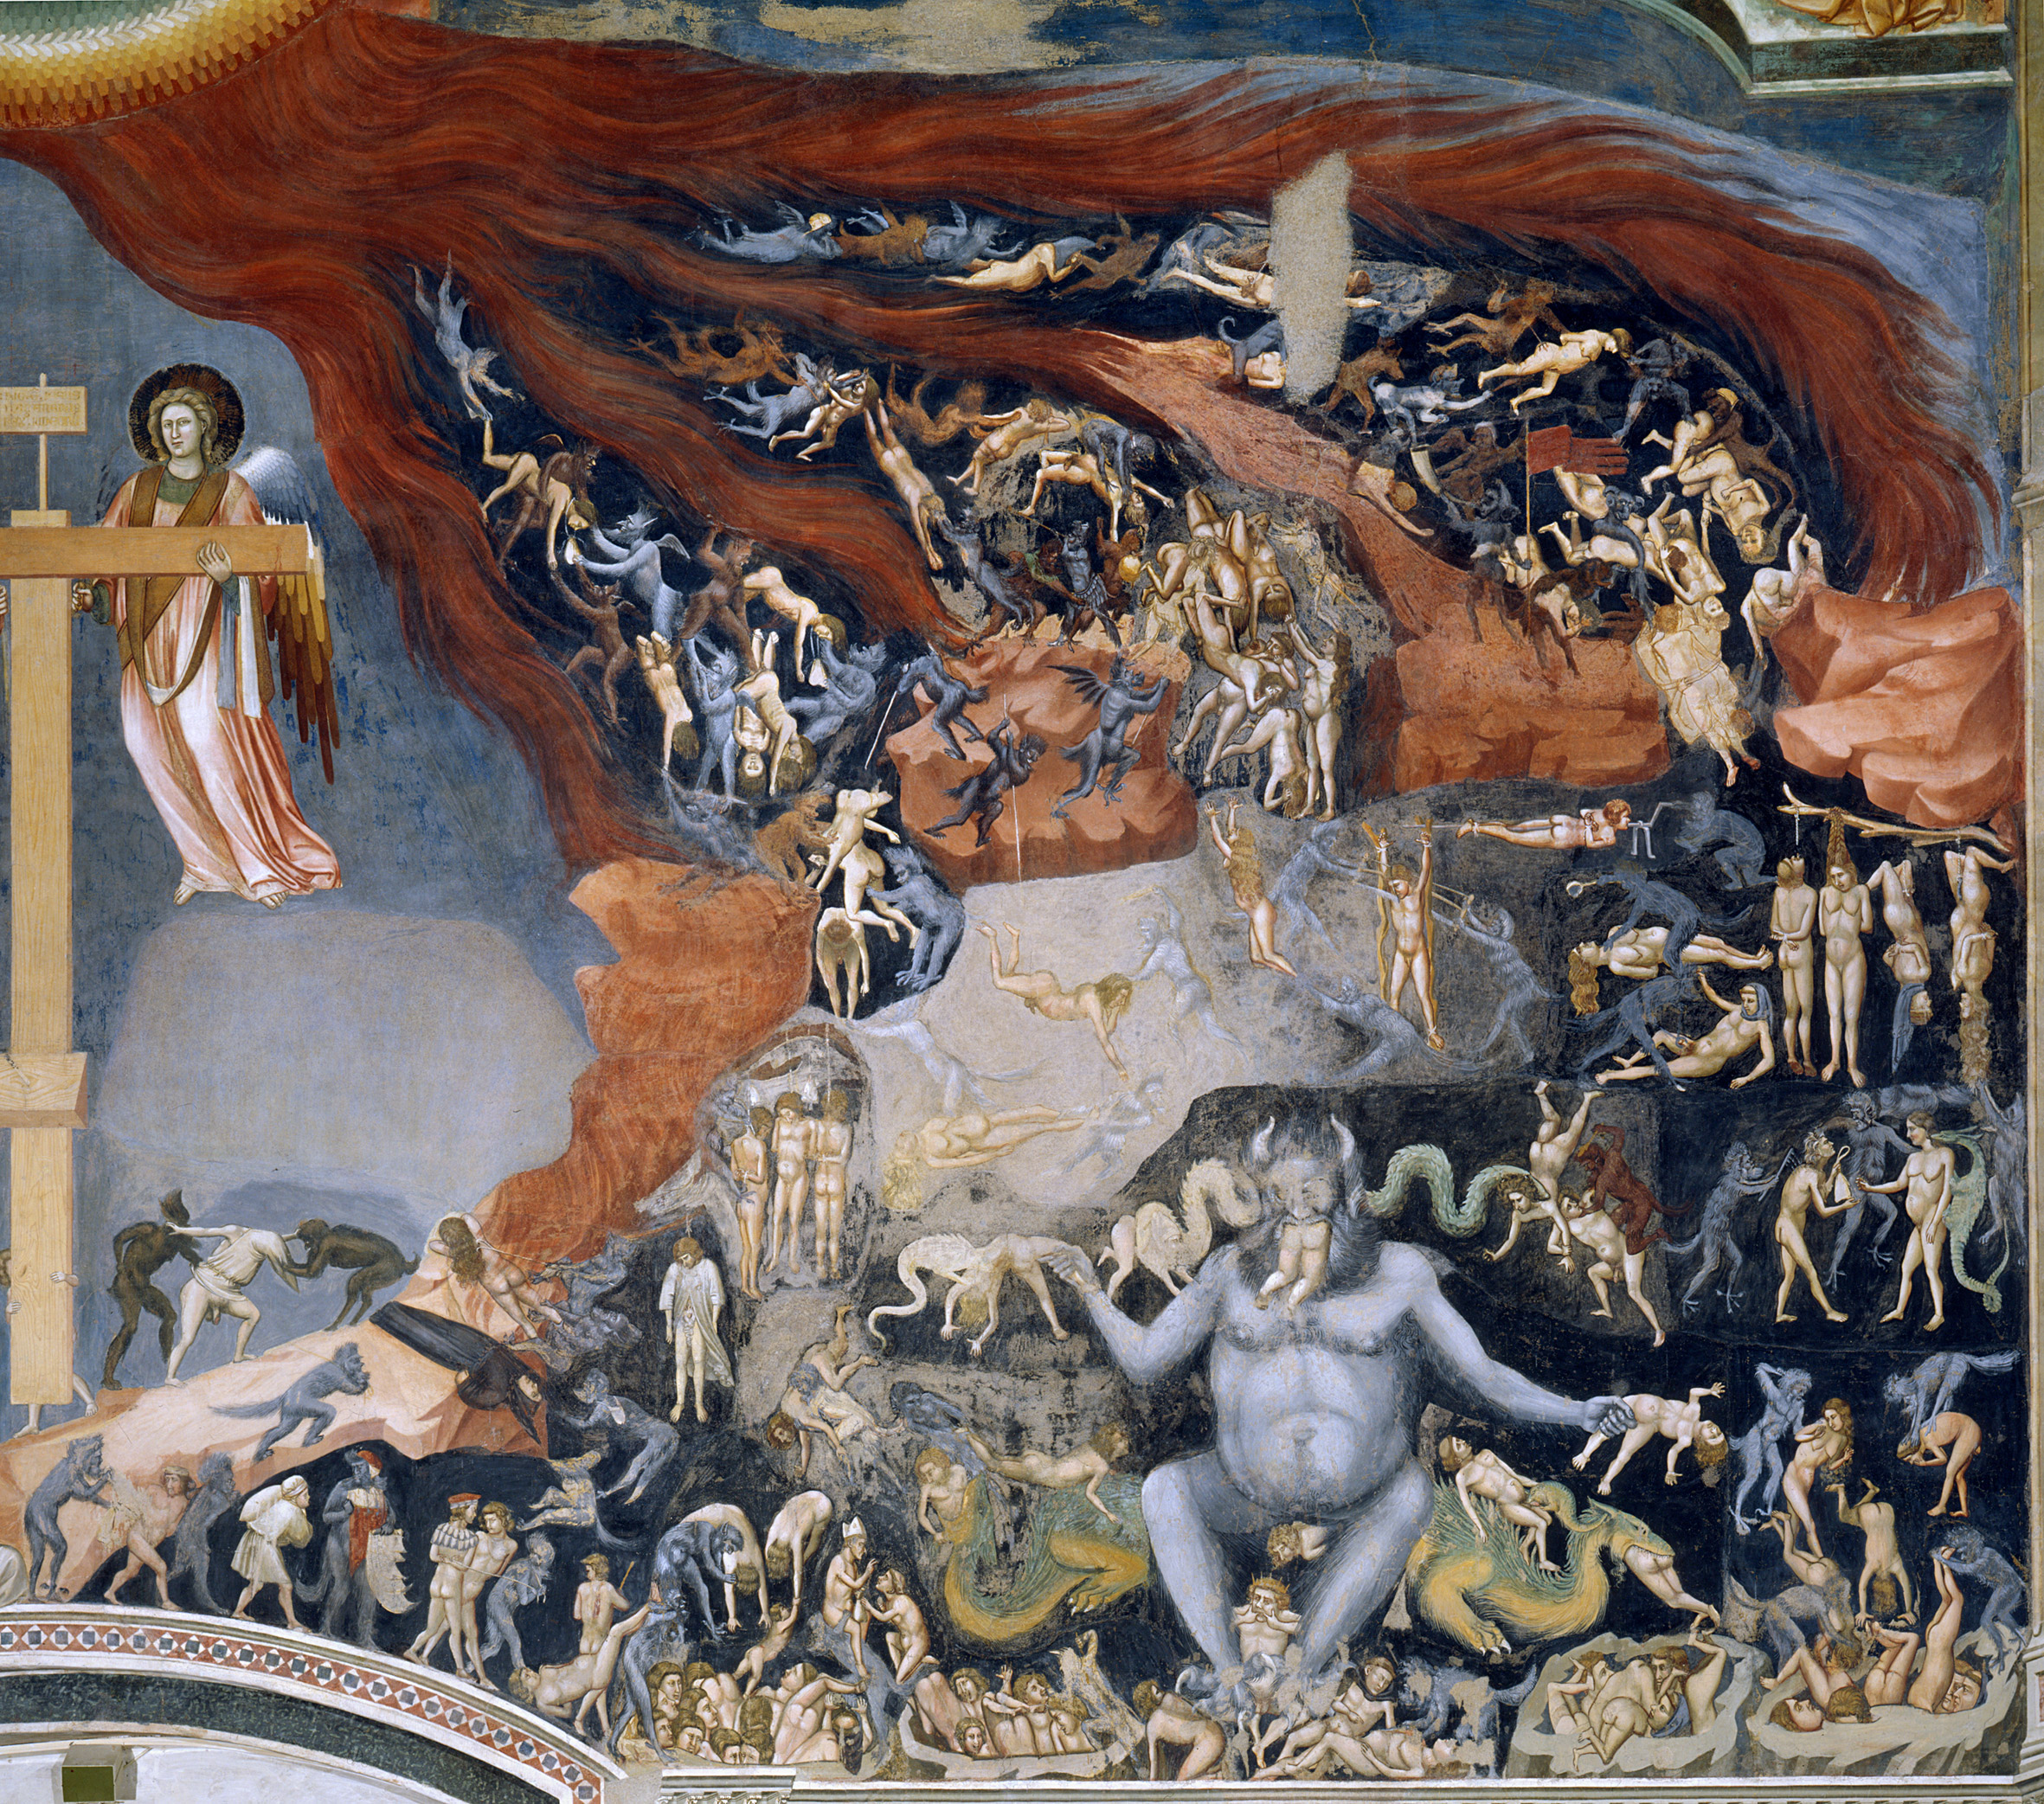 Inferno by Giotto di Bondone - 1305 - 1000 × 840 cm Cappella degli Scrovegni